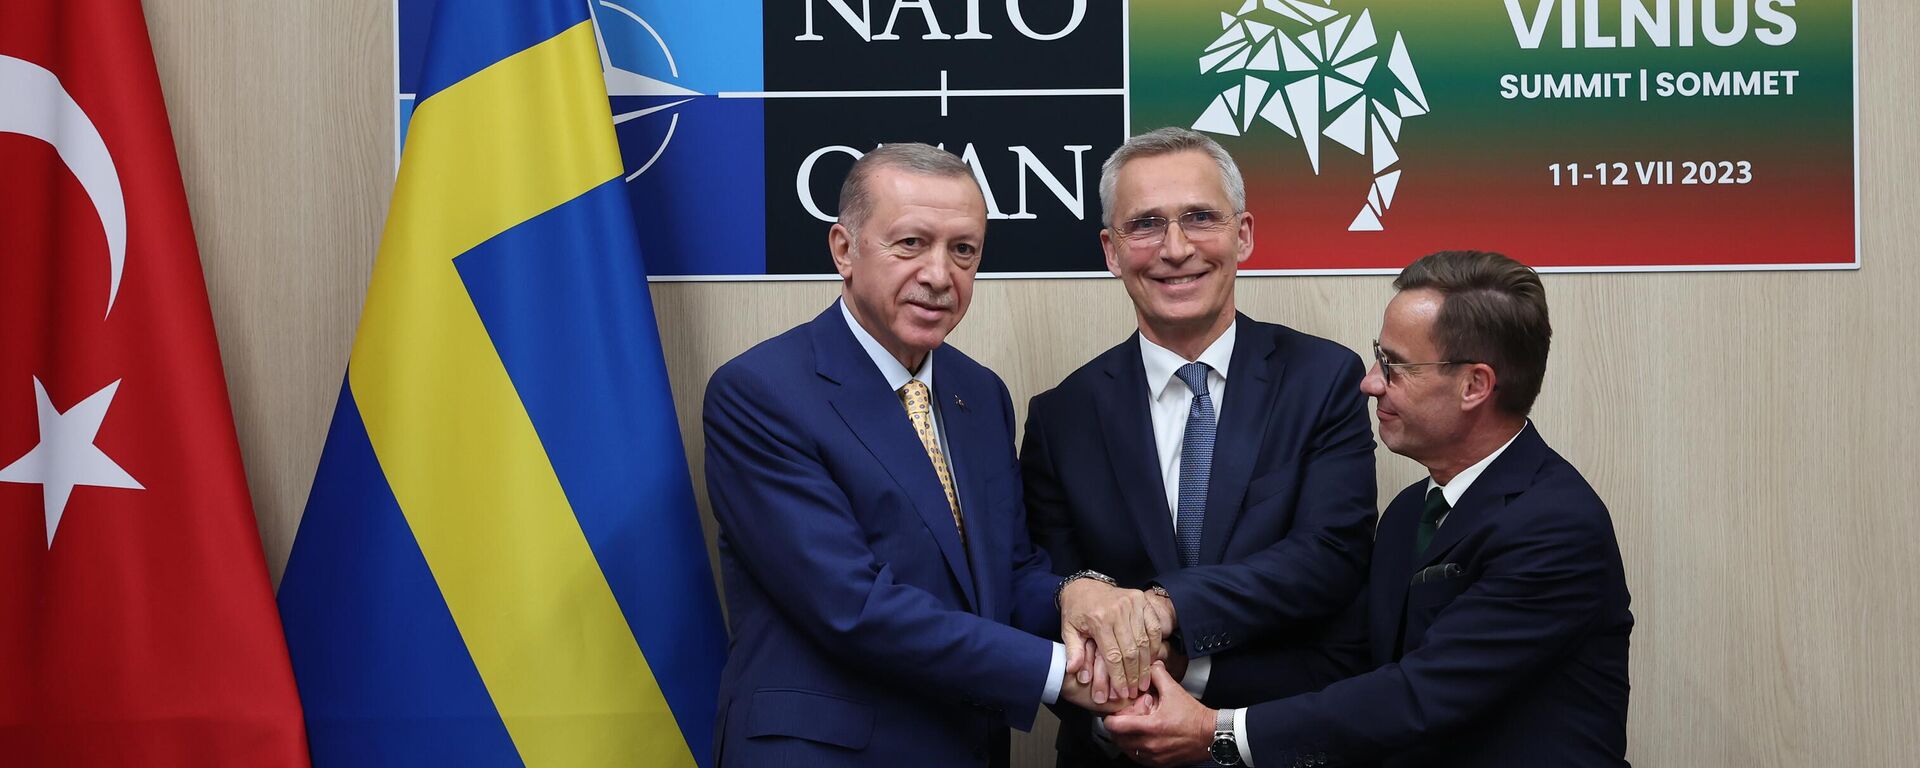 Cumhurbaşkanı Recep Tayyip Erdoğan, NATO Genel Sekreteri Jens Stoltenberg ve İsveç Başbakanı Ulf Kristersson - Sputnik Türkiye, 1920, 24.10.2023